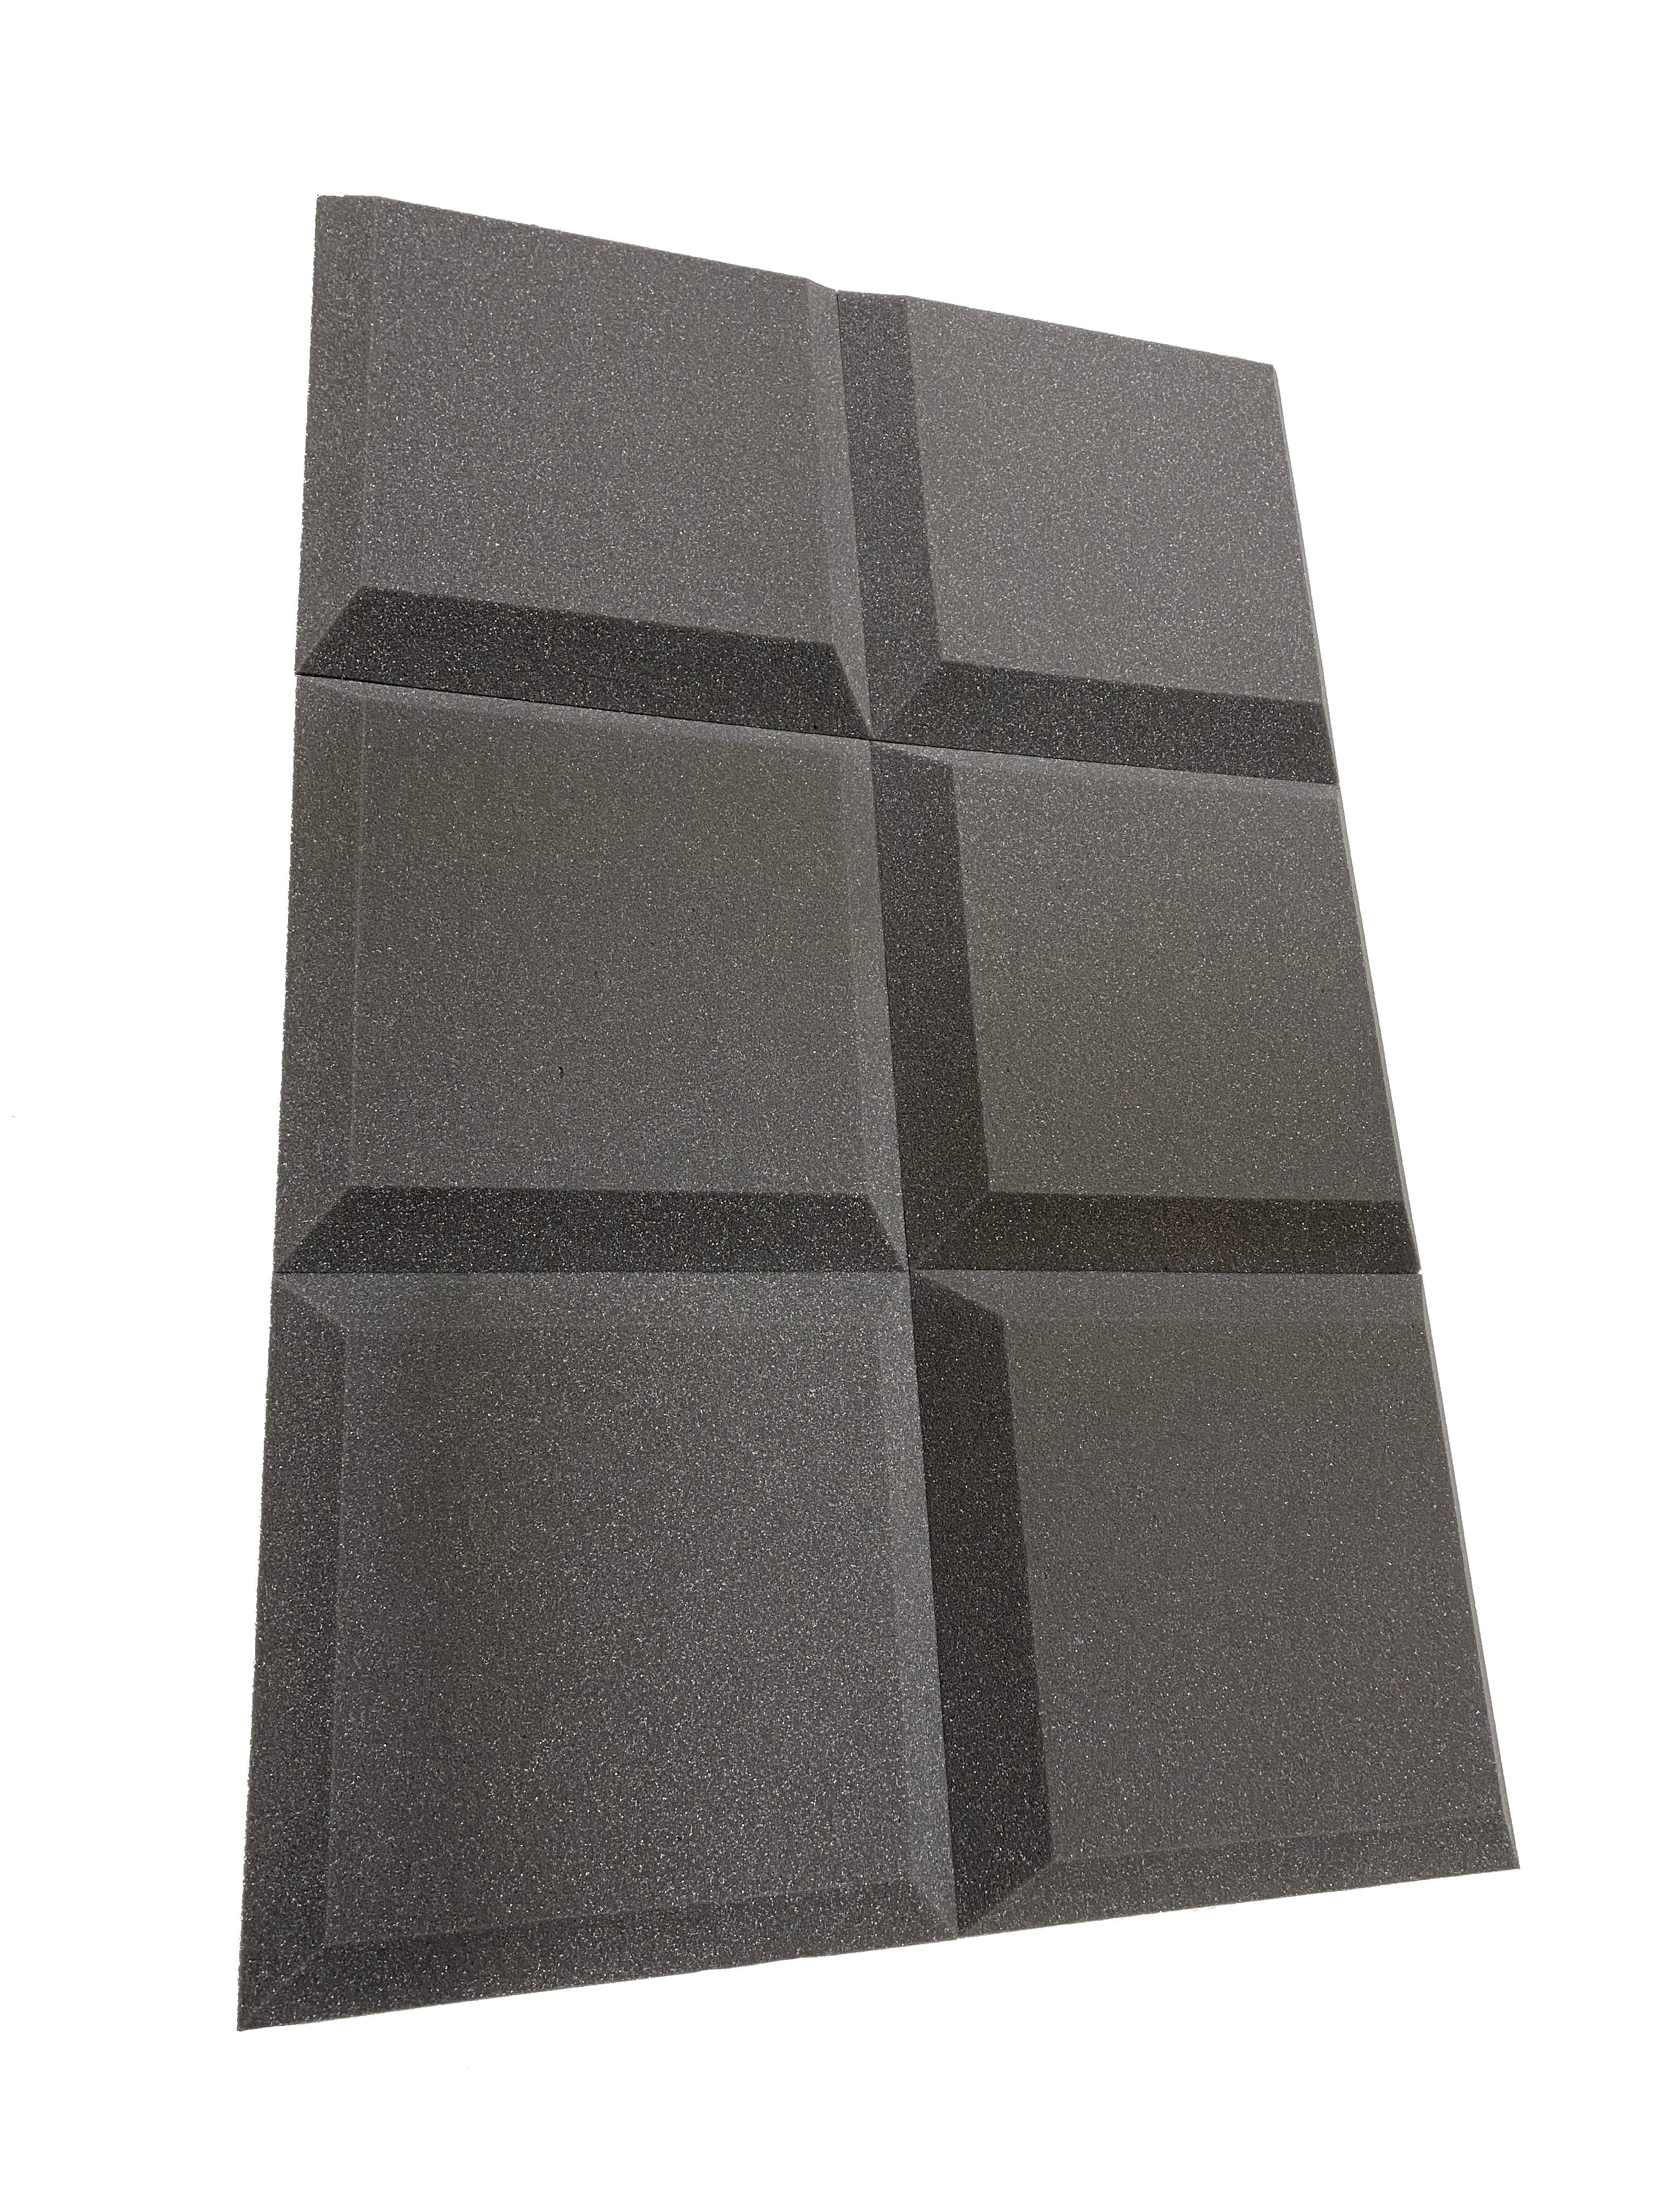 Tegular 12" Acoustic Studio Foam Tile Pack – 12 Tiles, 1.1qm Coverage